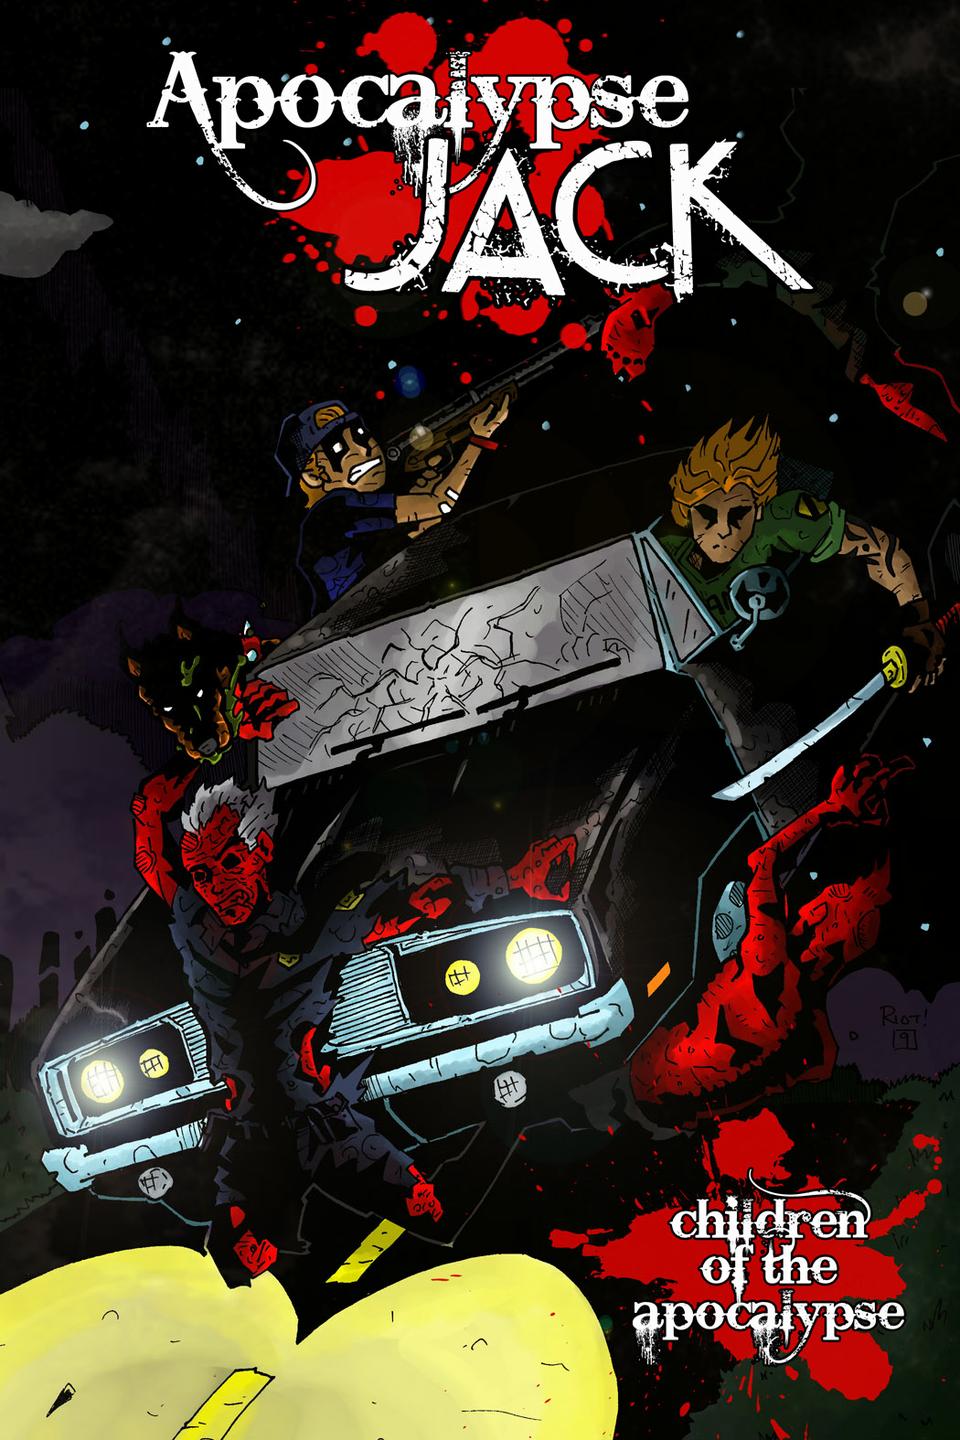 APOCALYPSE JACK MOCK COVER